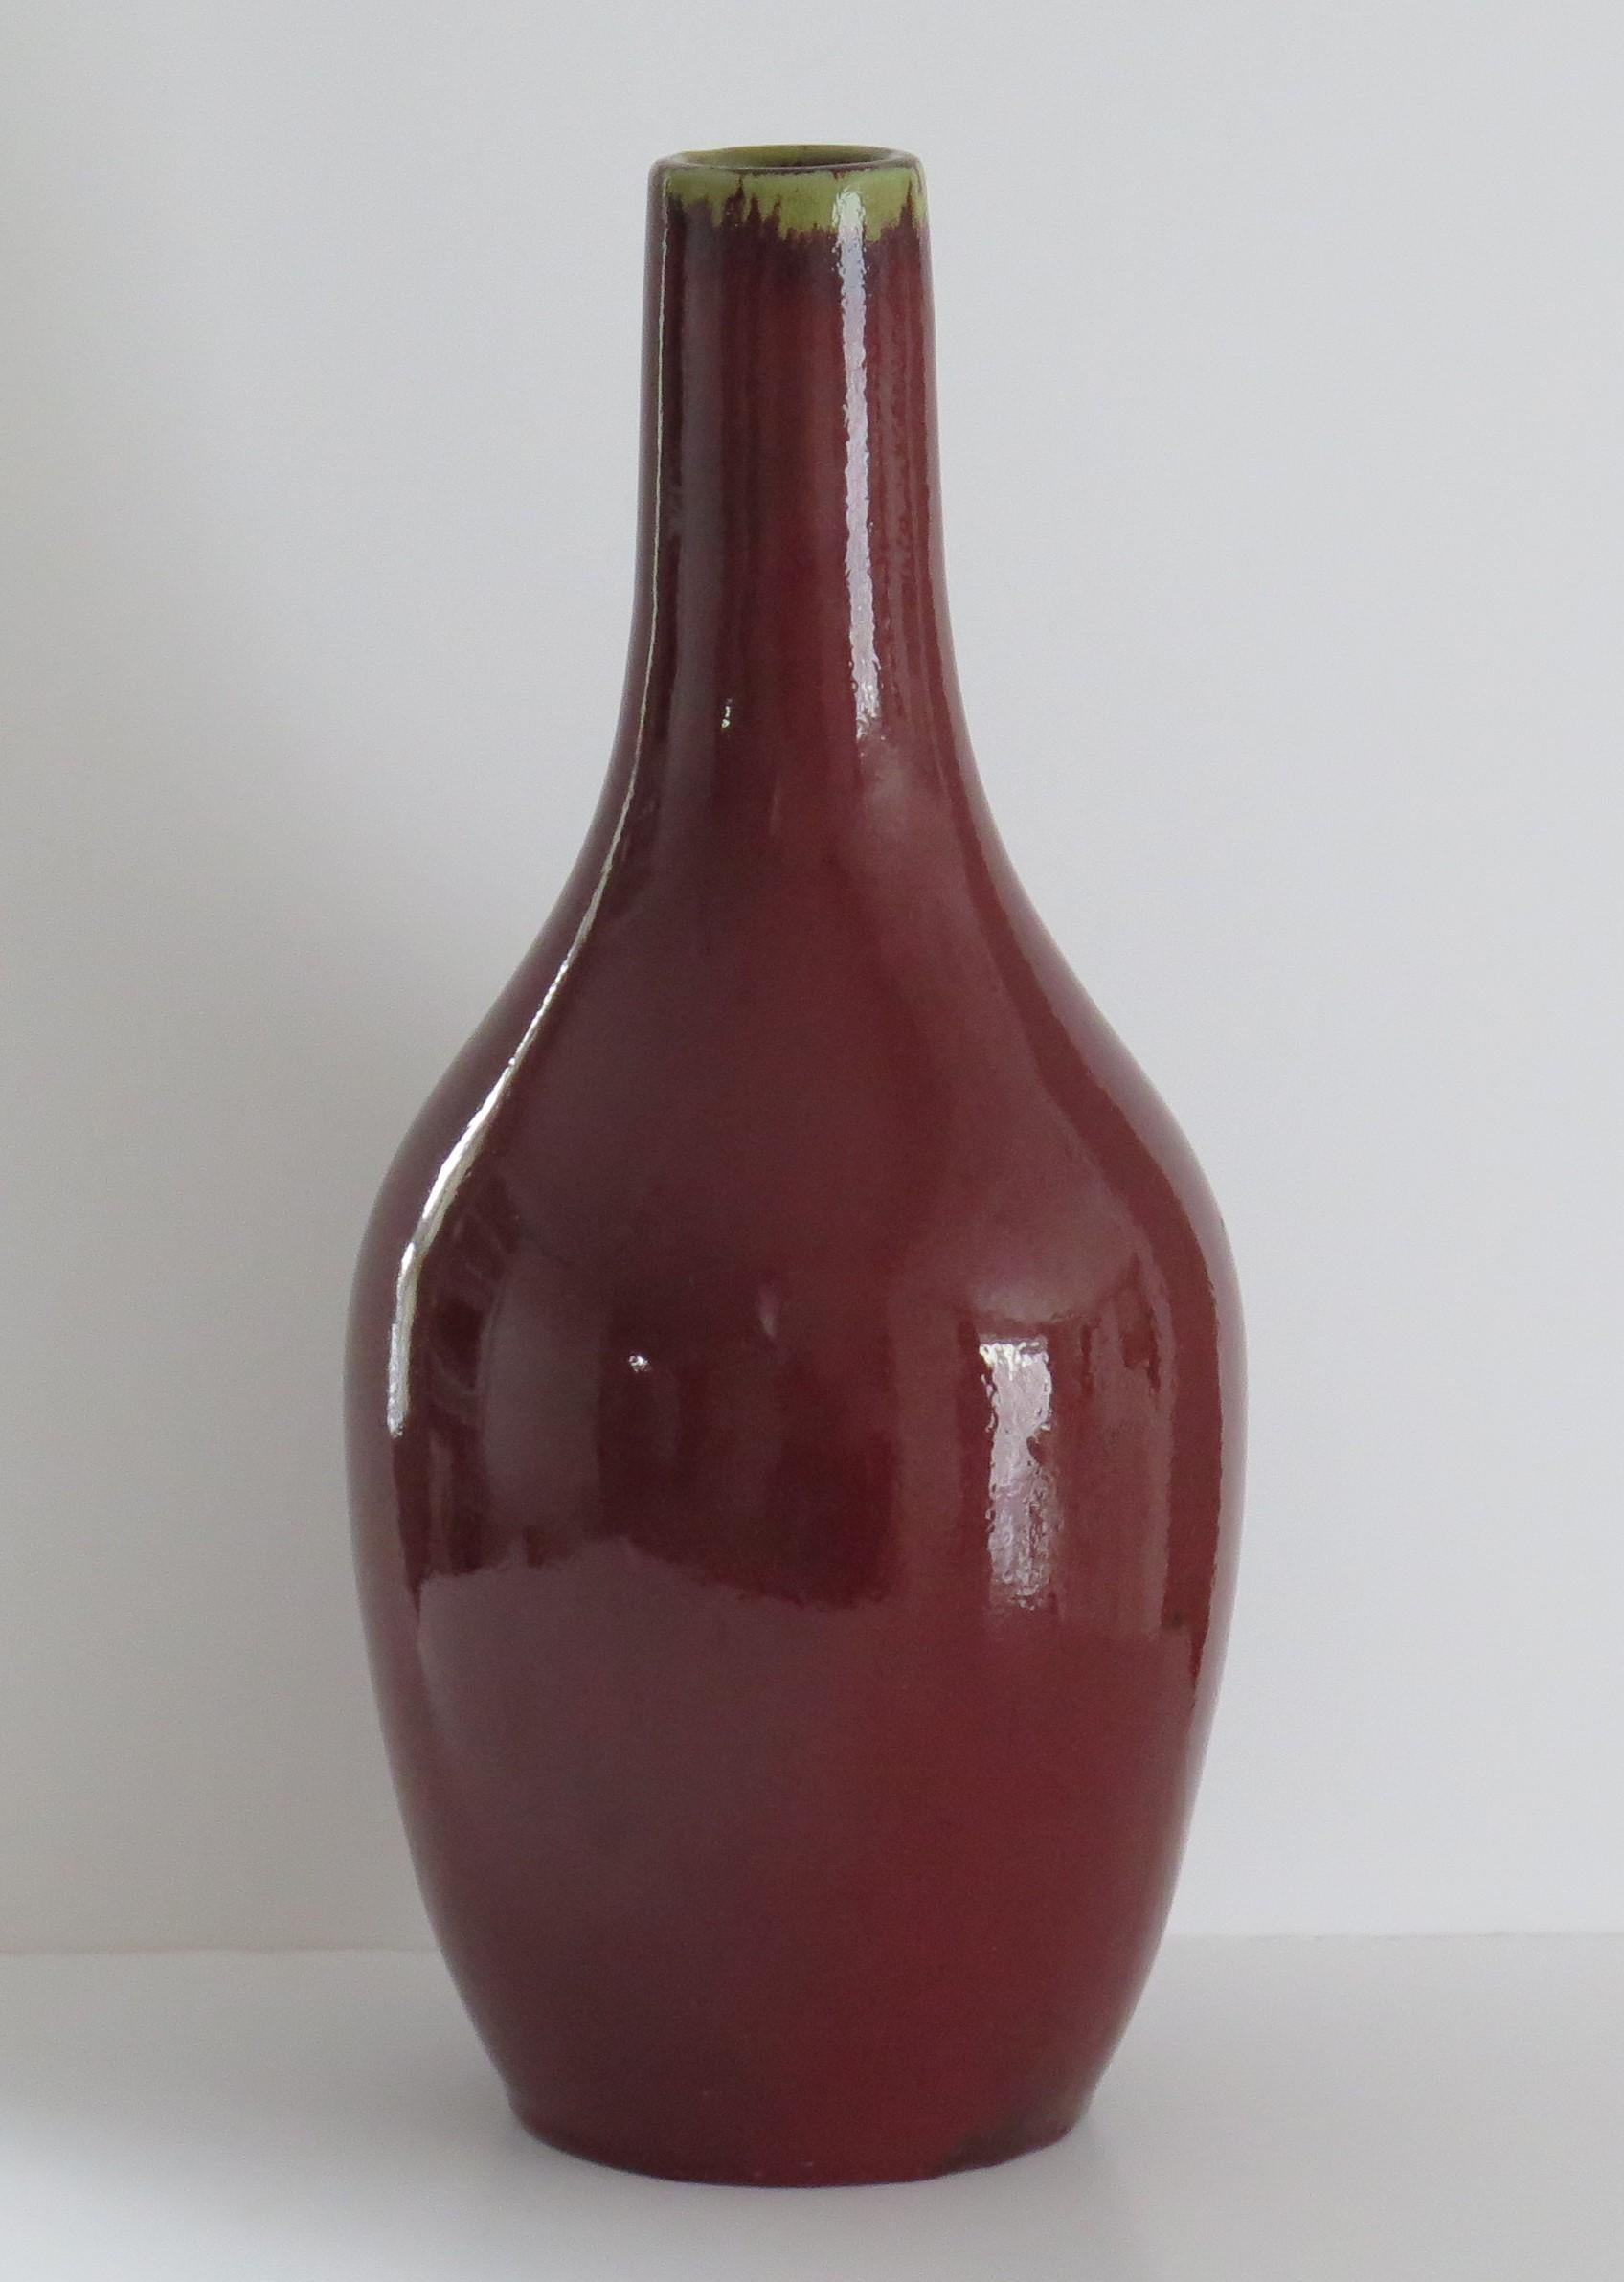 Dies ist eine sehr dekorative Porzellan Large Chinese Export Bottle Vase oder Krug mit einer monochromen ochsenblutroten 